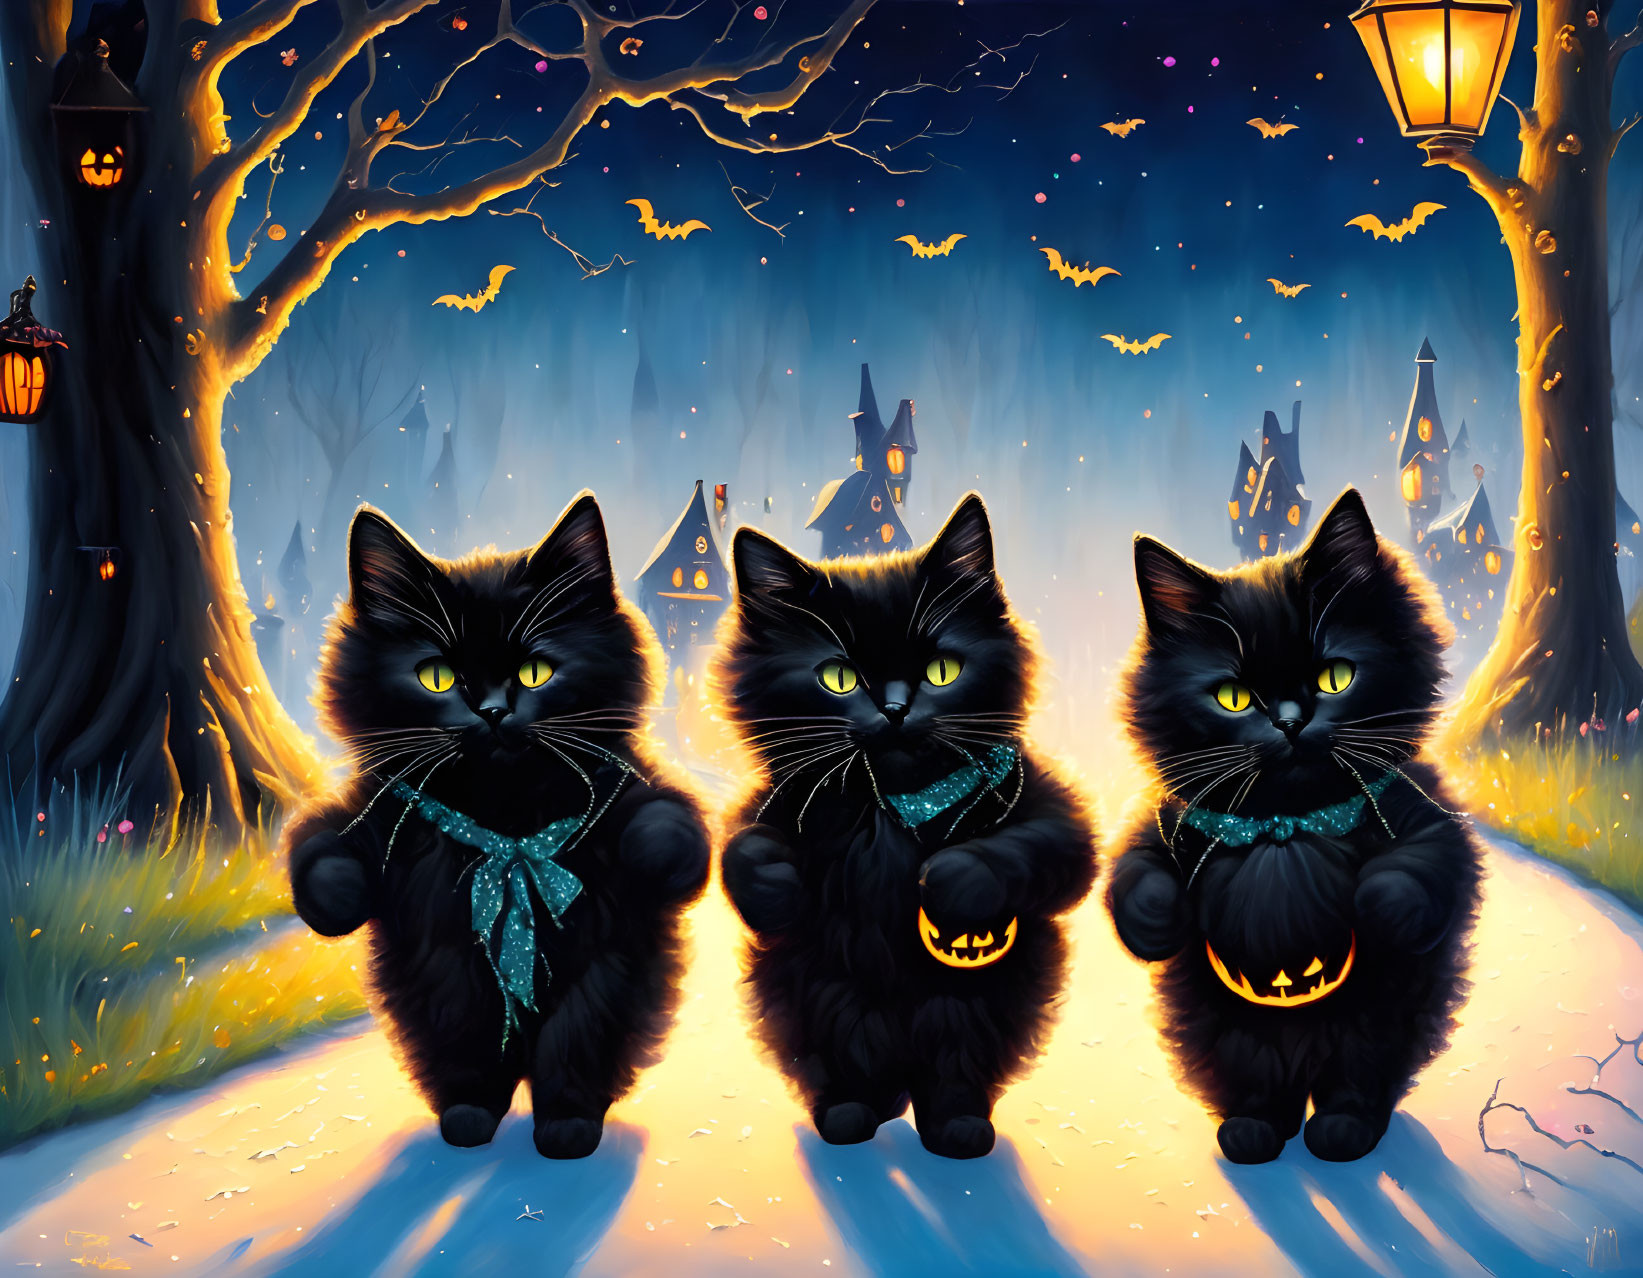 3 Little Kittens on Halloween